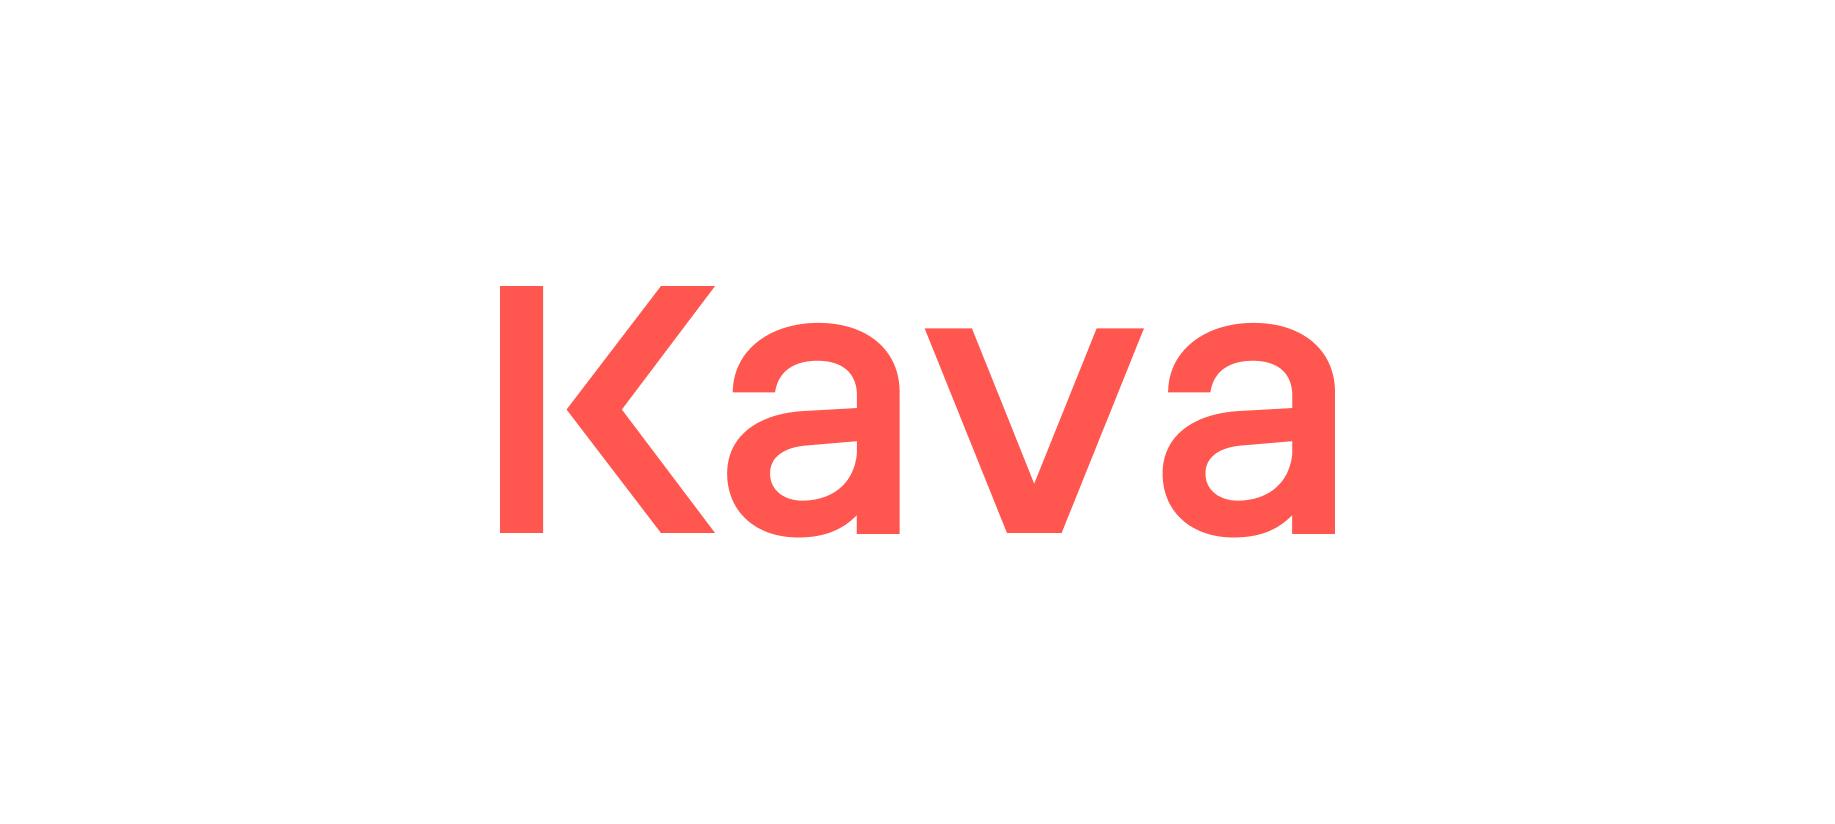 how to buy kava crypto